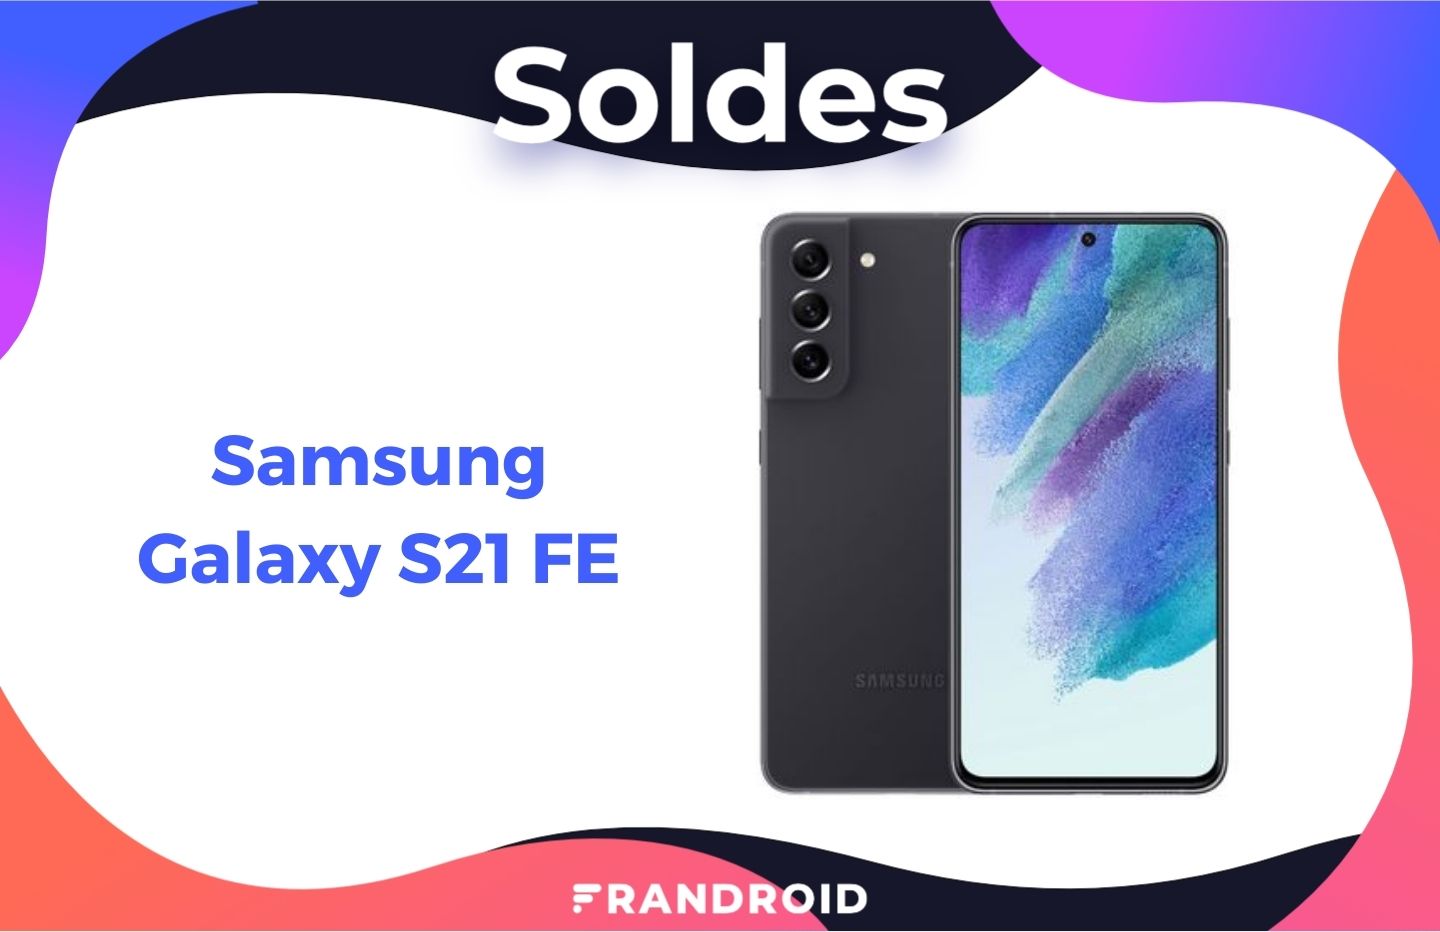 SFR : le Galaxy S21 FE 5G à 1 € avec les écouteurs sans fil offerts